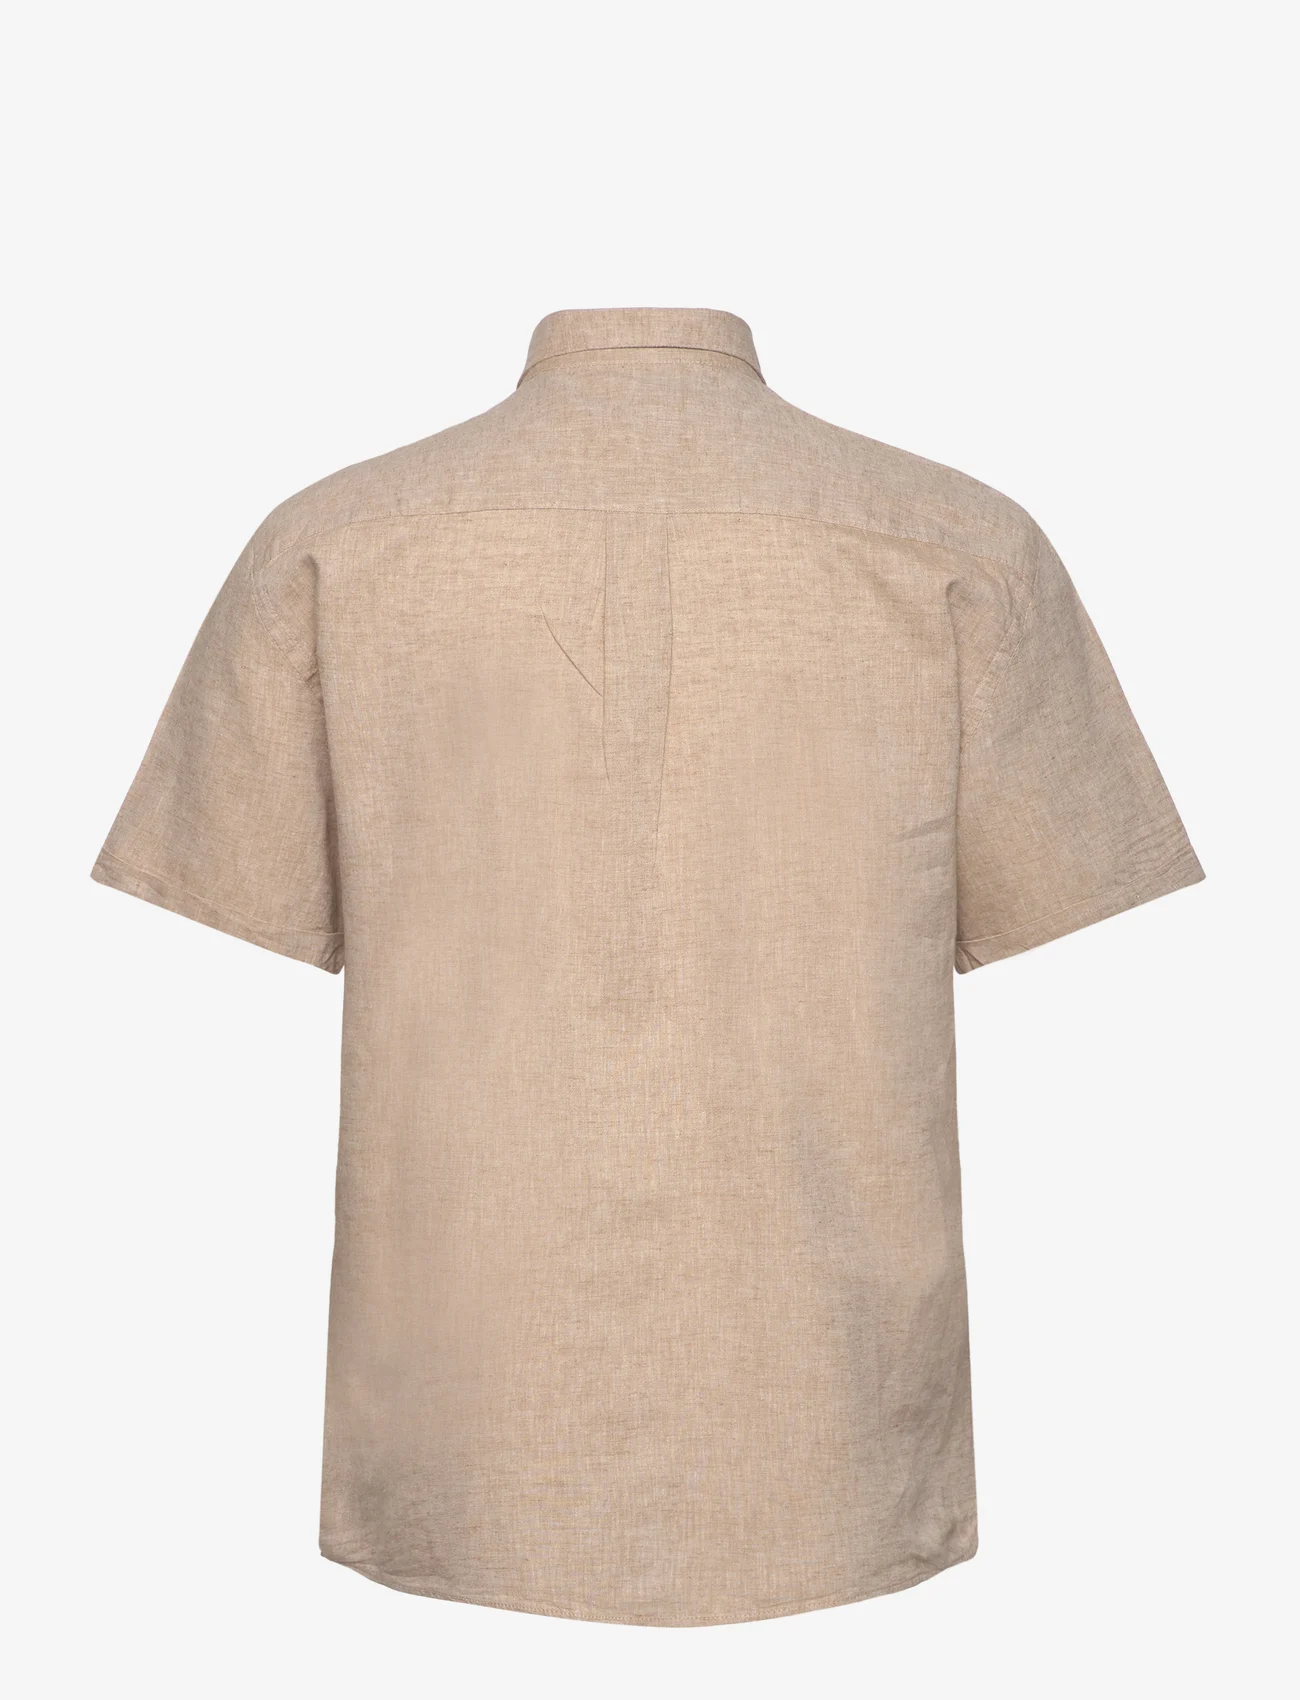 Lindbergh - Cotton/linen shirt S/S - leinenhemden - mid sand - 1